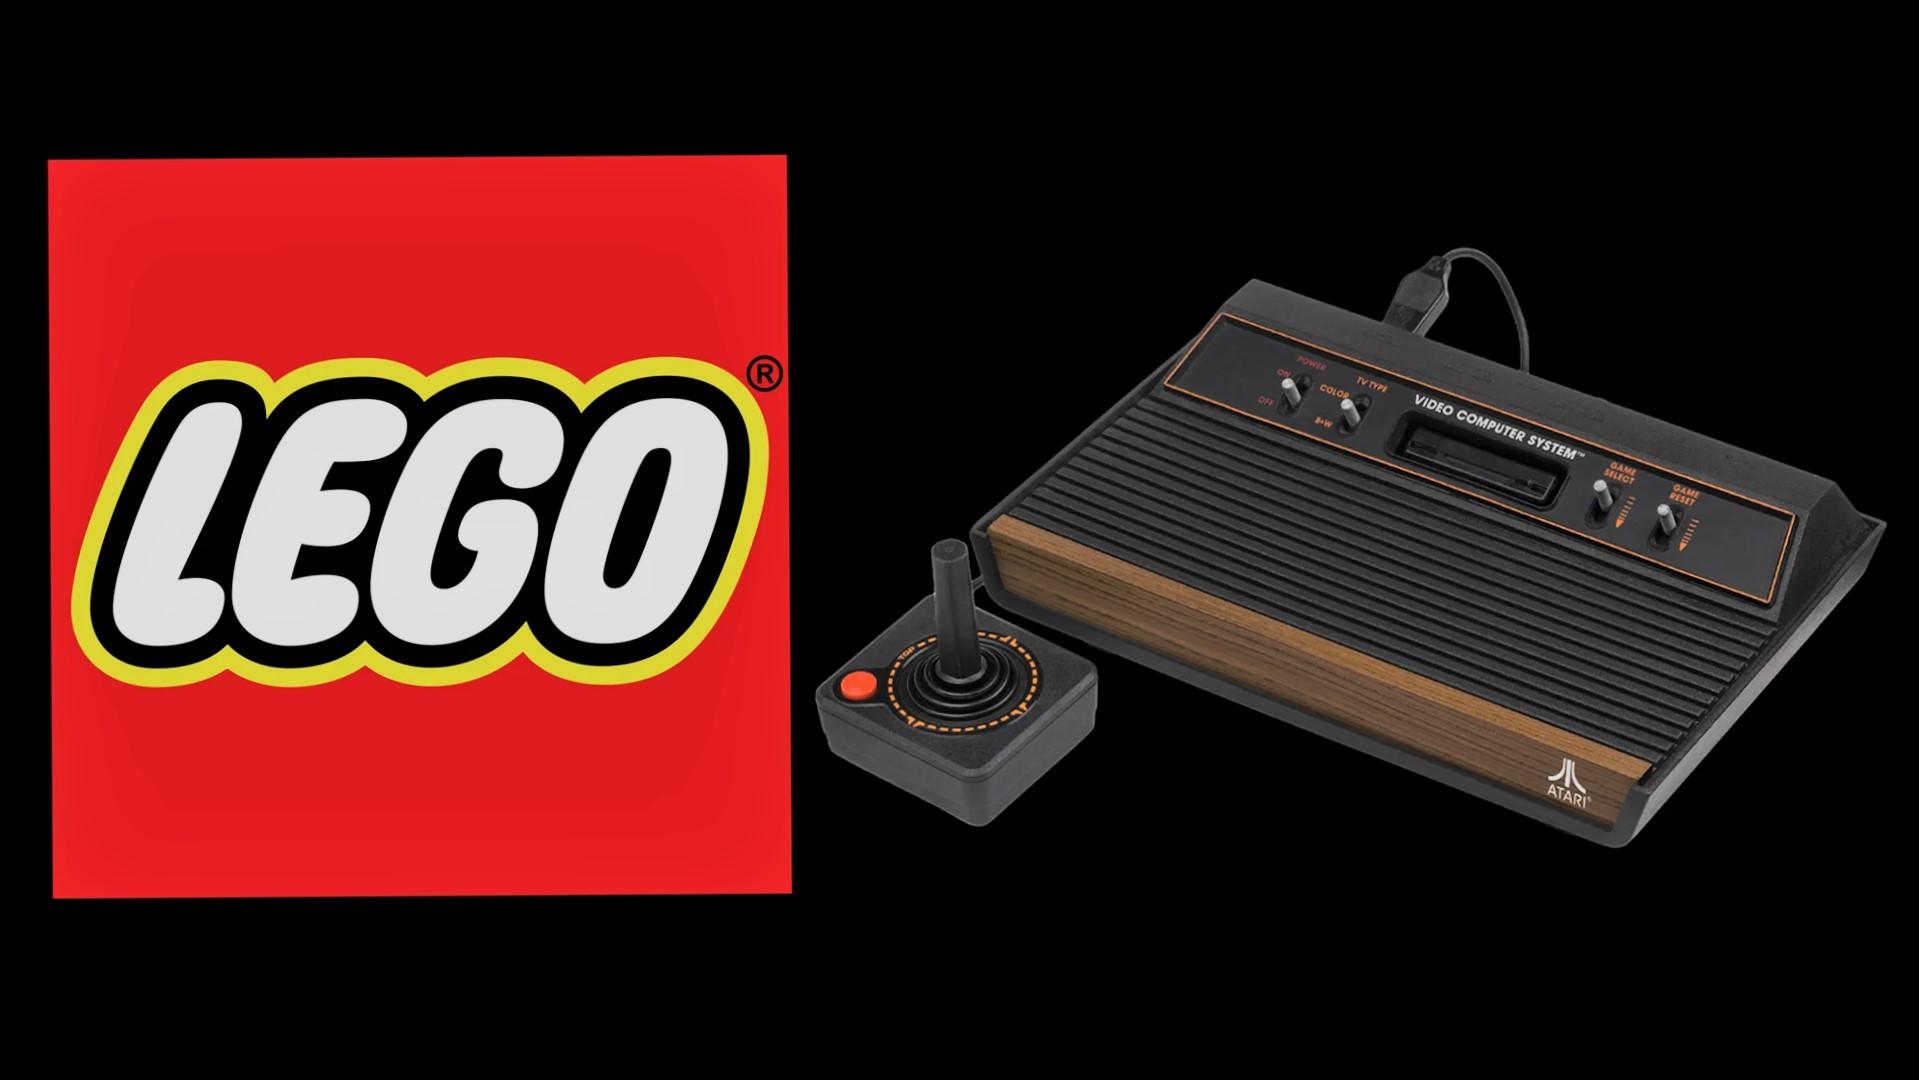 فاش شدن قیمت مجموعه لگو Atari 2600 تا انتشار اطلاعات بیشتر